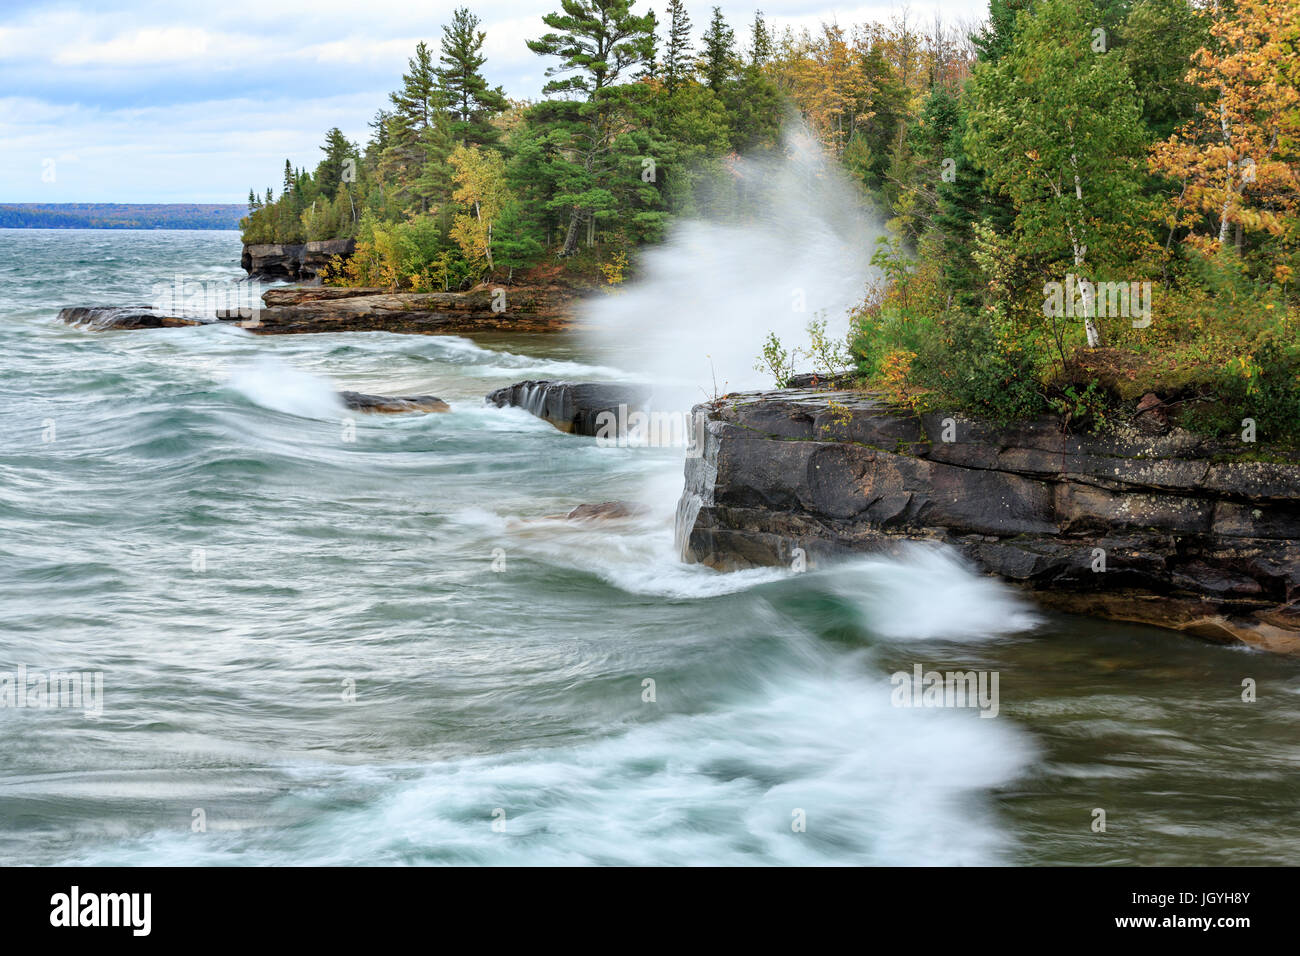 El romper de las olas rompen contra una costa rocosa en Lago nacional Pictured Rocks en la Península Superior de Michigan Foto de stock